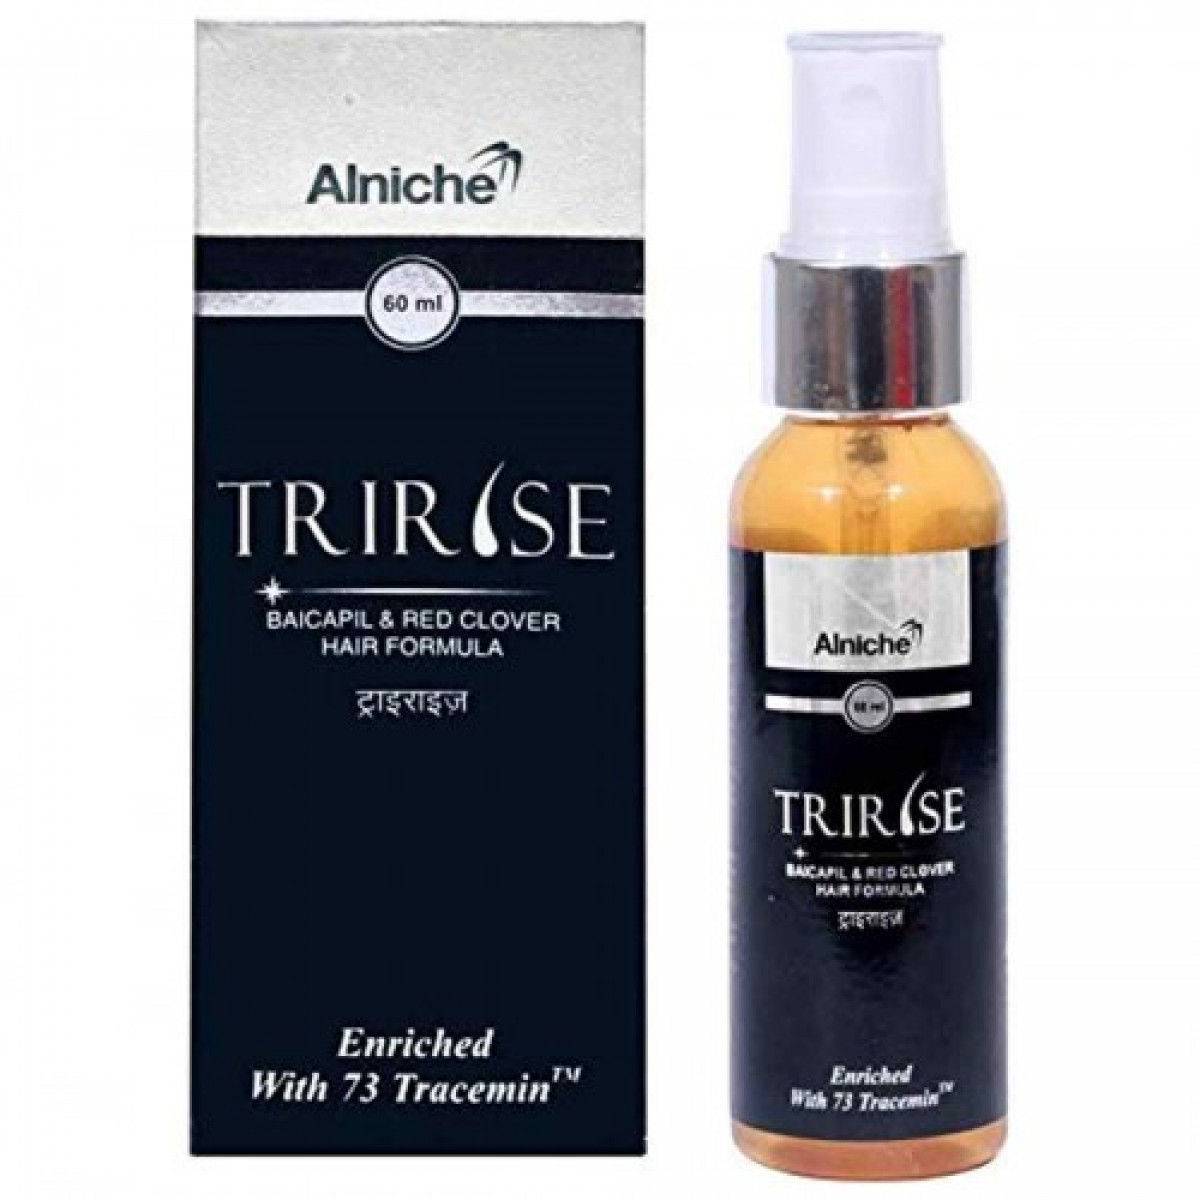 Buy Tririse Hair Serum, 60 ml Online